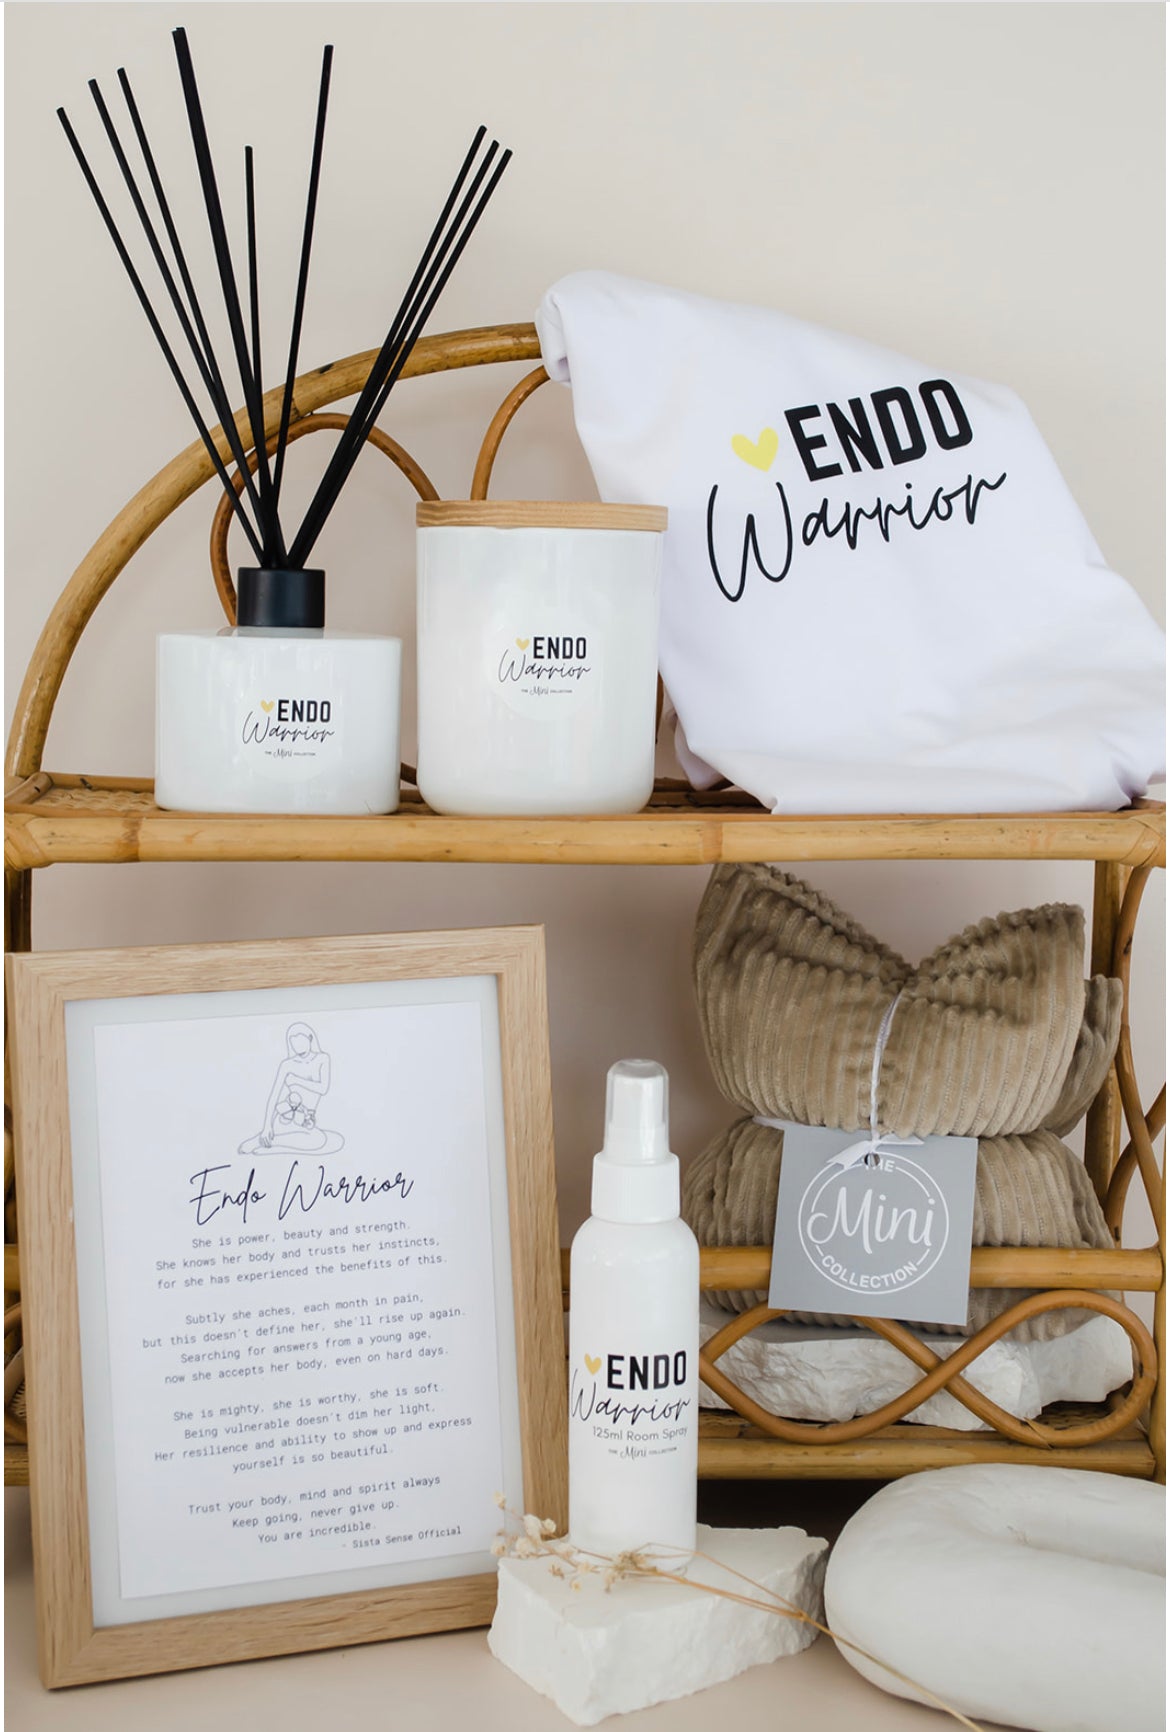 The Endometriosis Warrior Collection